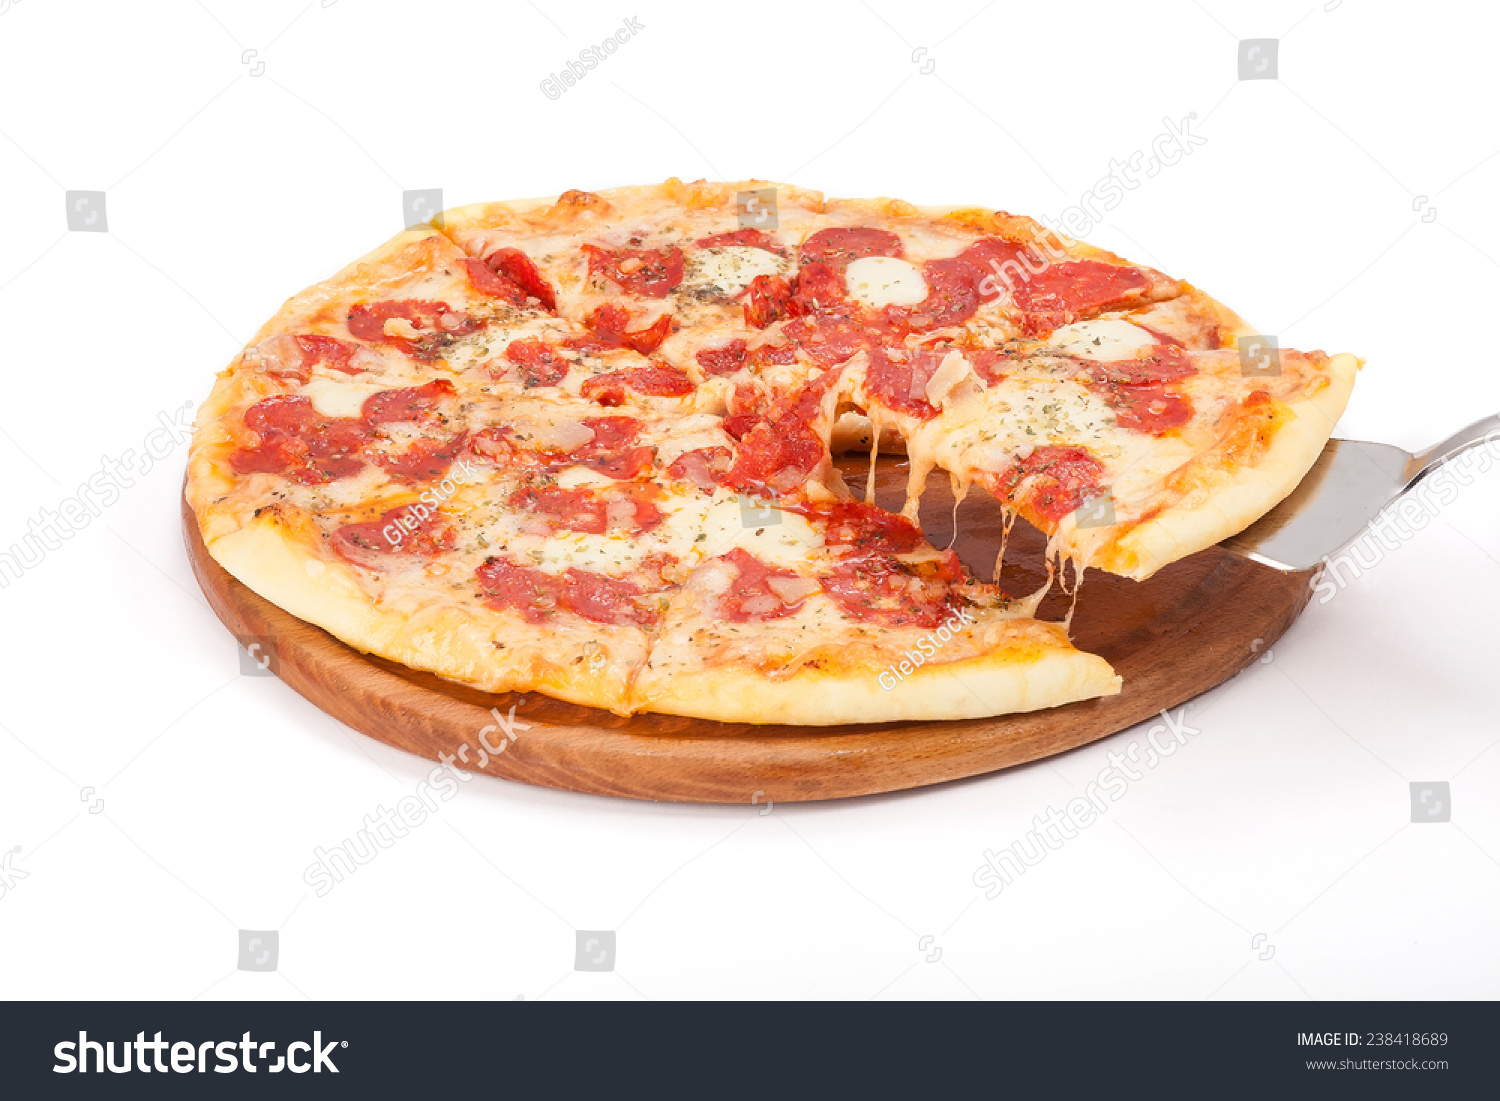 пицца рецепт приготовления в домашних условиях с колбасой и сыром фото 81